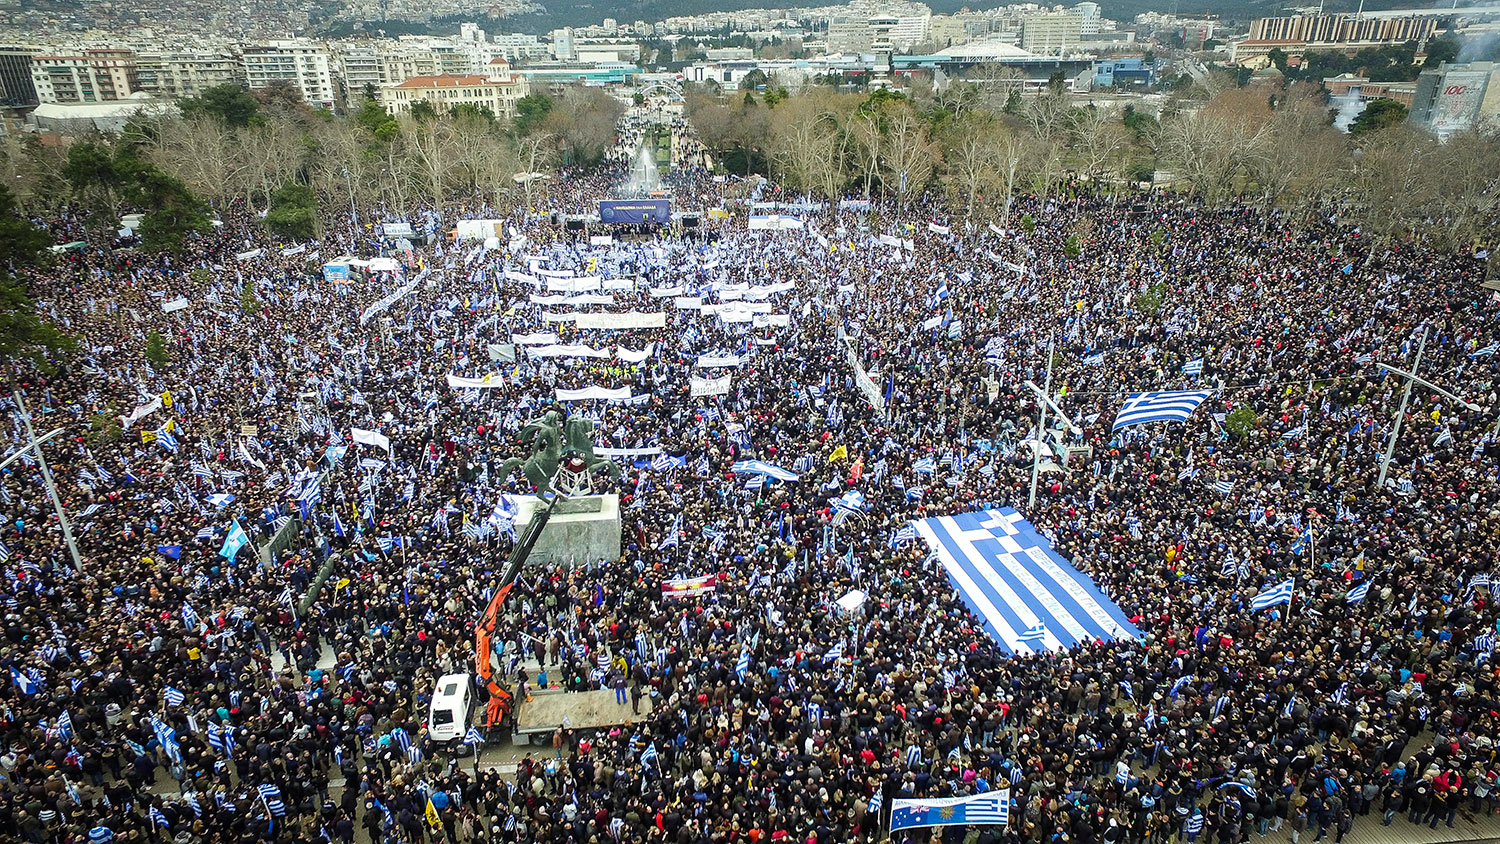 ΣΥΡΙΖΑ: Ακολουθούν το Μαξίμου και επιτίθενται στην παρουσία του Μ. Θεοδωράκη στο συλλαλητήριο